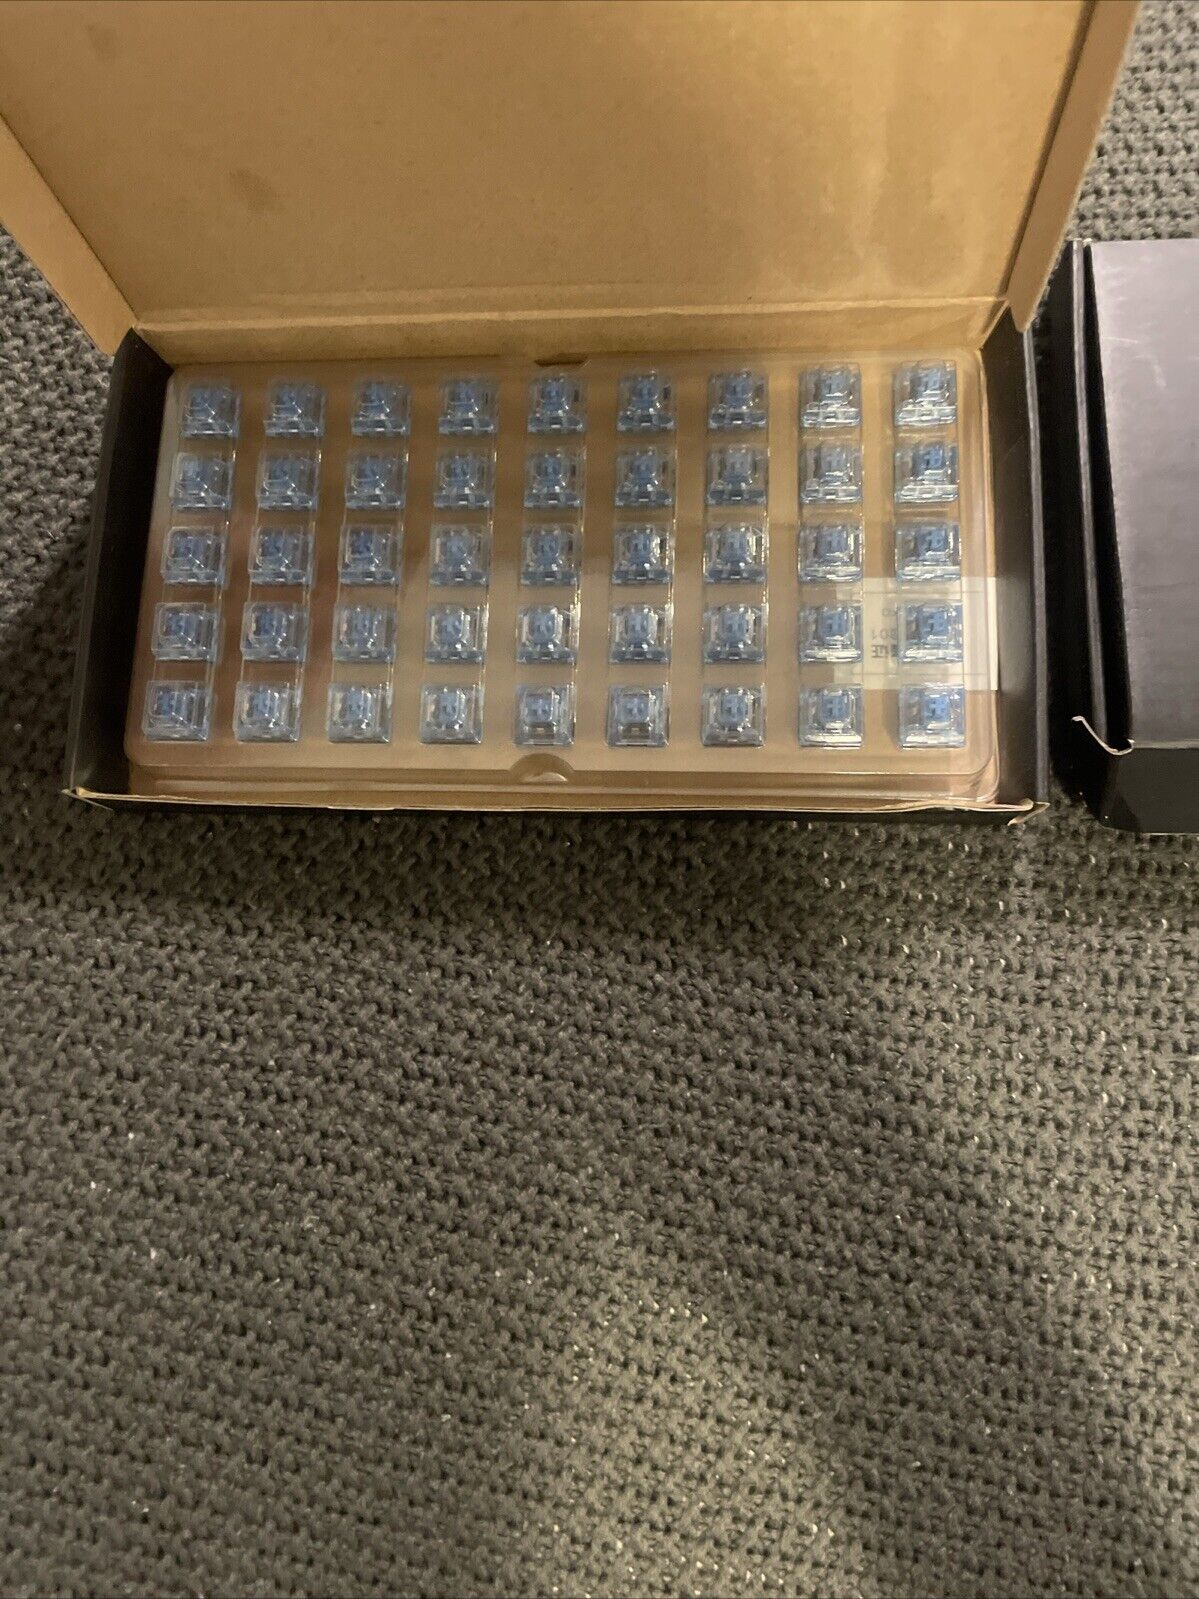 Akko Blue Switches (1.5 Boxes)